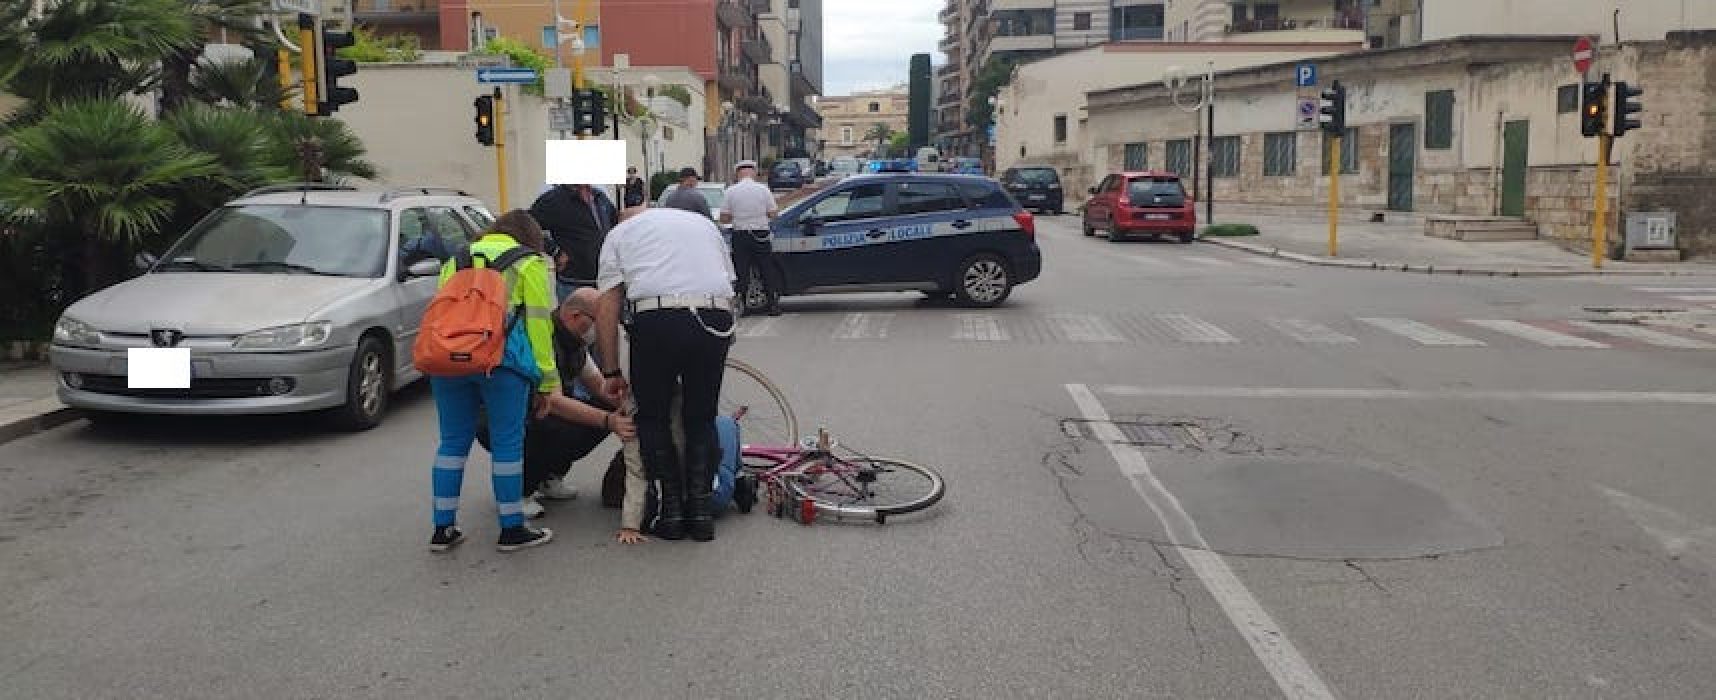 Impatto auto-bici su via Vittorio Veneto: 24enne in ospedale